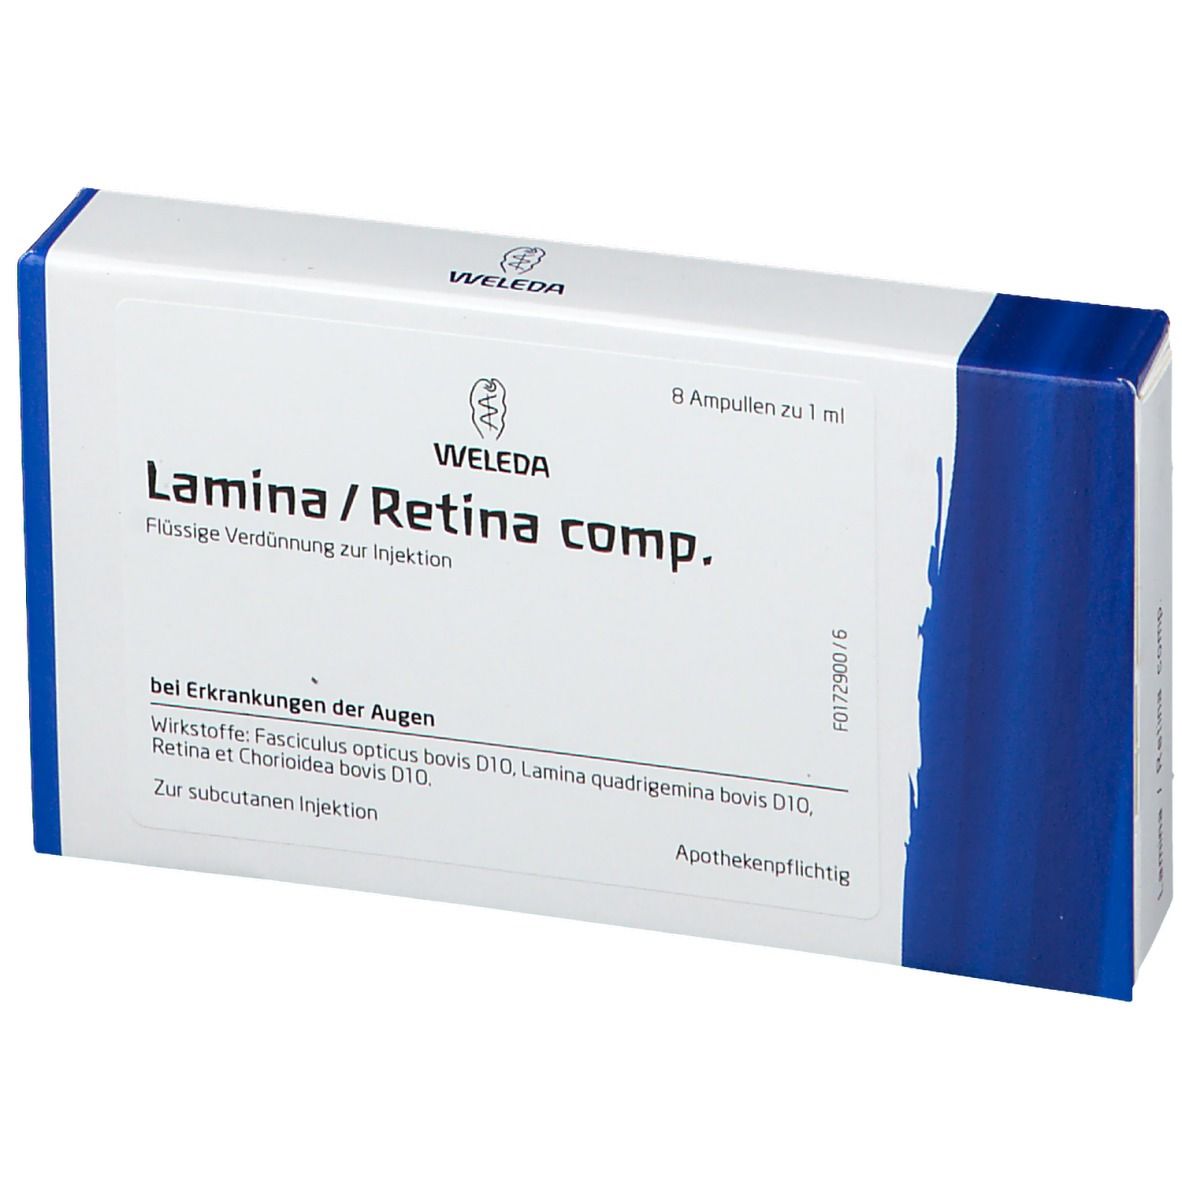 Lamina / Retina Comp. Amp.